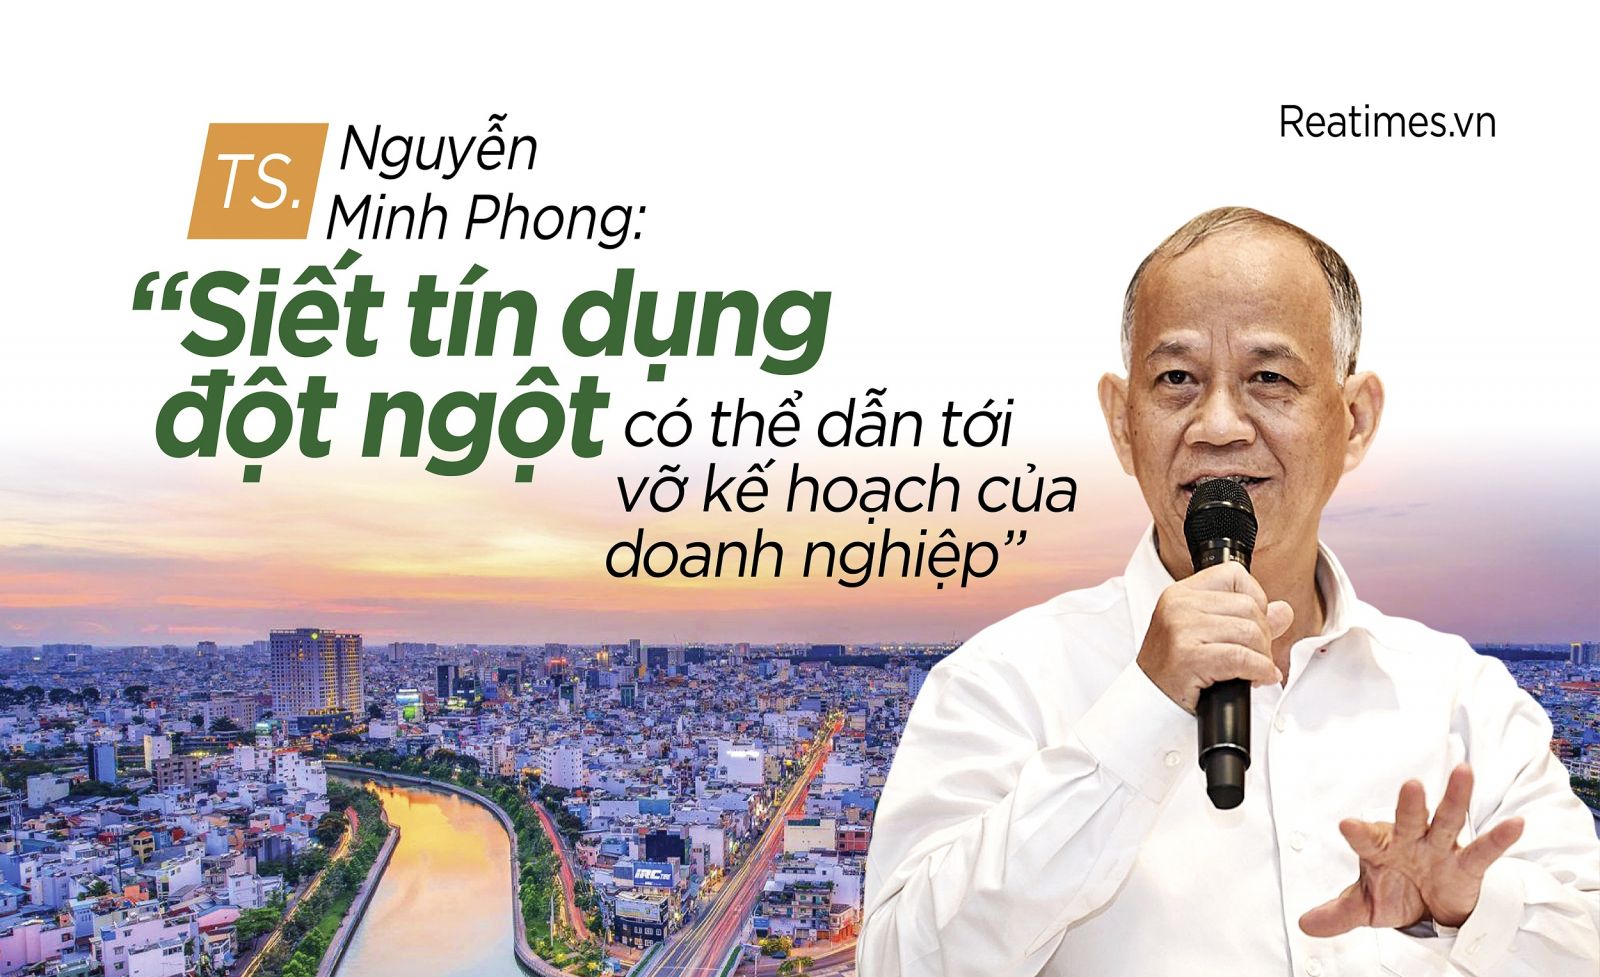 TS. Nguyễn Minh Phong: “Siết tín dụng đột ngột có thể dẫn tới vỡ kế hoạch của doanh nghiệp”